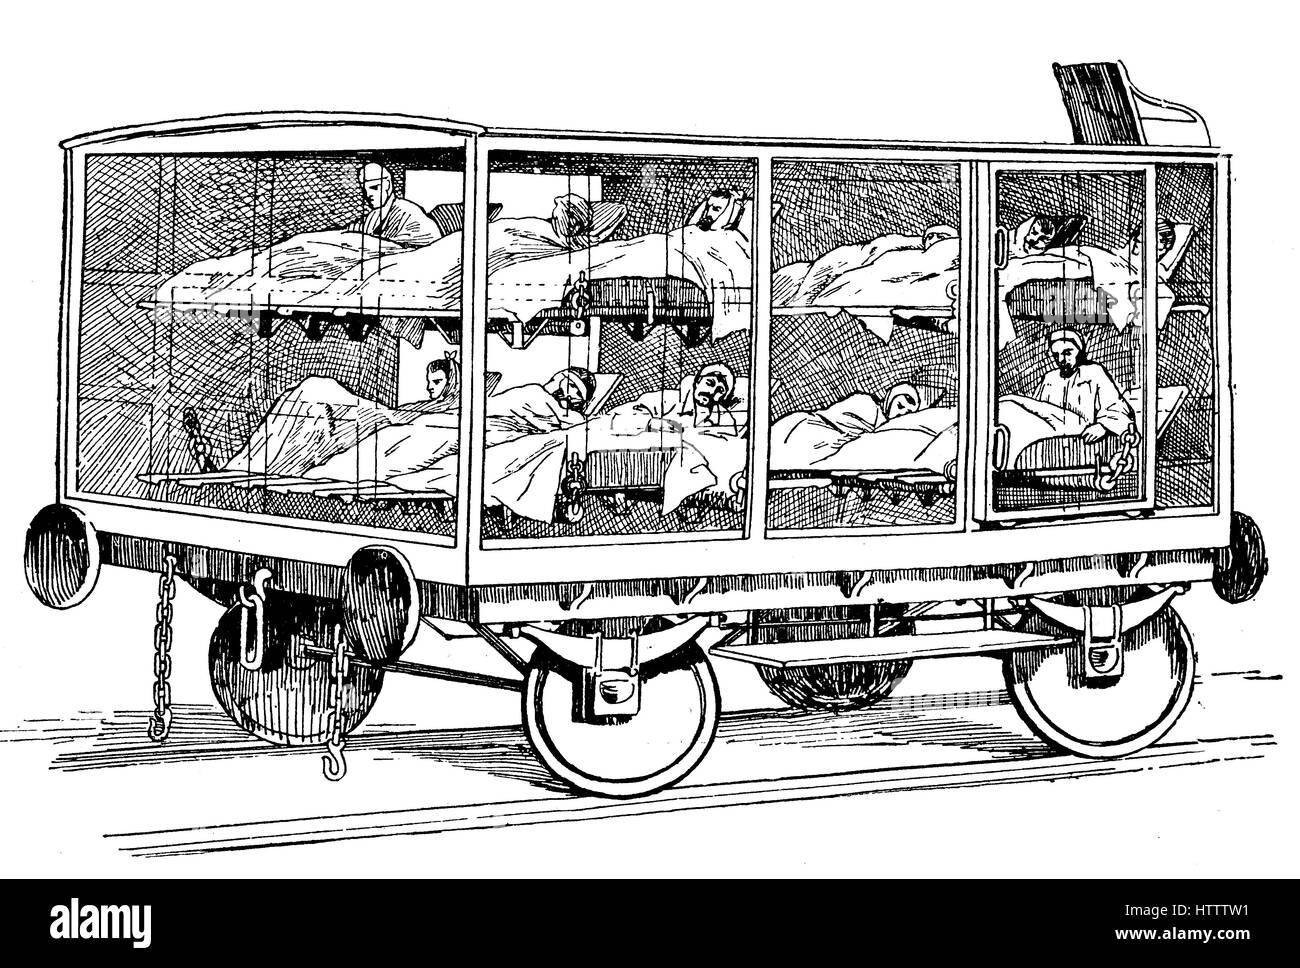 Guerre franco-prussienne 1870 - 1871, une voiture de l'hôpital d'un train, l'état, militaire et internationale des soins infirmiers, le transport dans la guerre, l'Allemagne, la reproduction d'une gravure sur bois à partir de 1882, l'amélioration numérique Banque D'Images